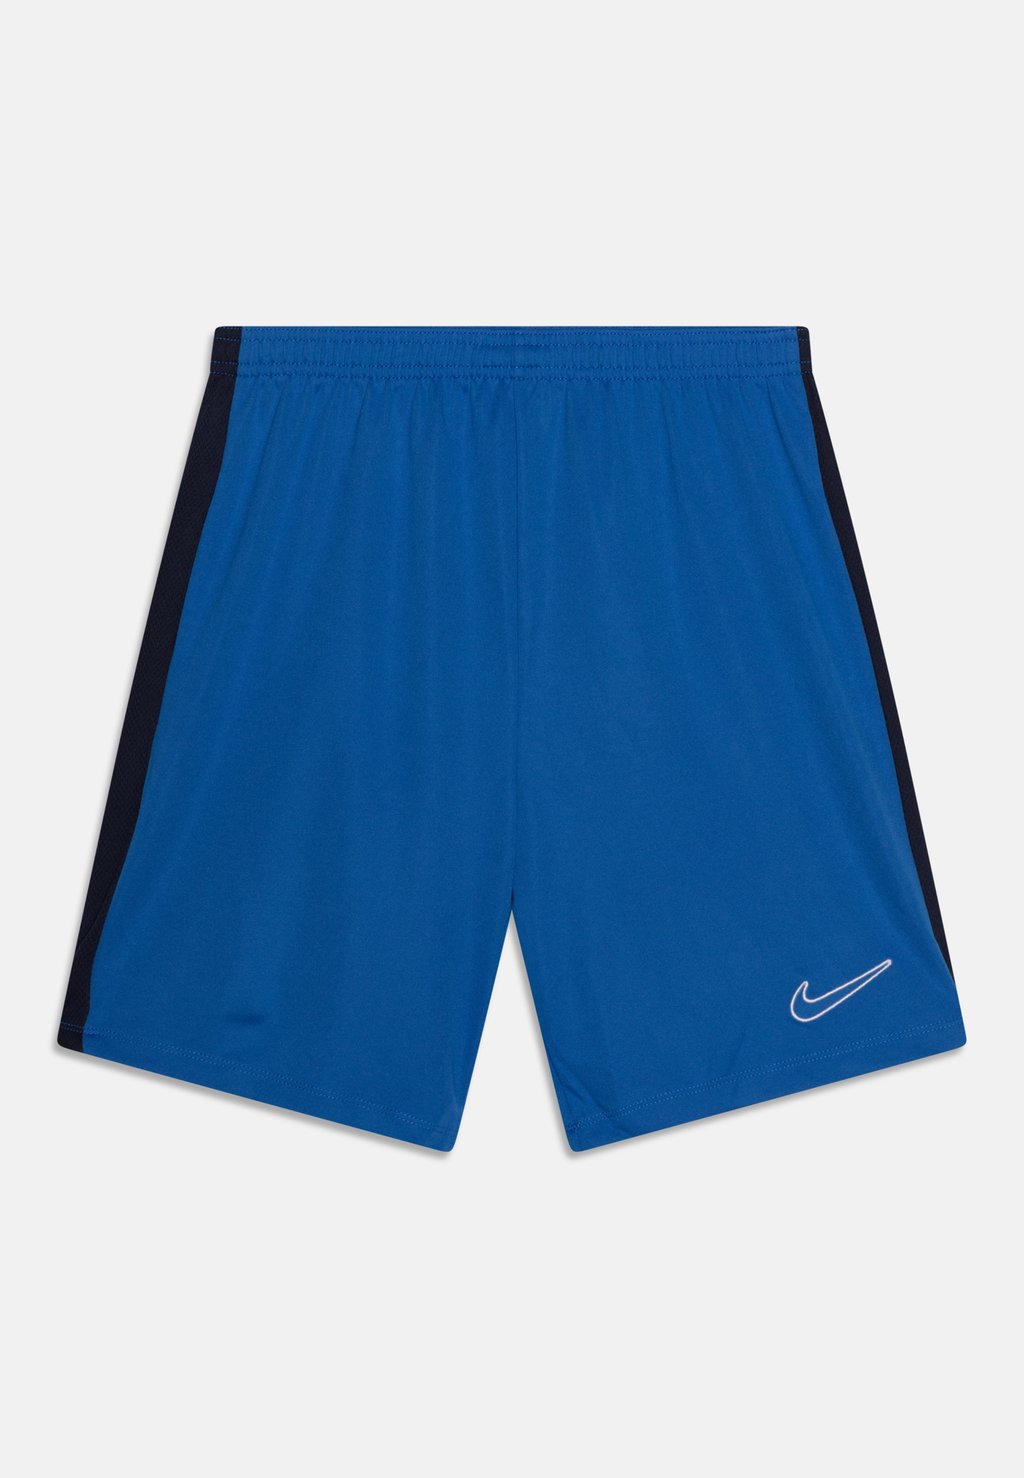 Спортивные шорты Academy 23 Branded Unisex Nike, цвет royal blue/obsidian/white